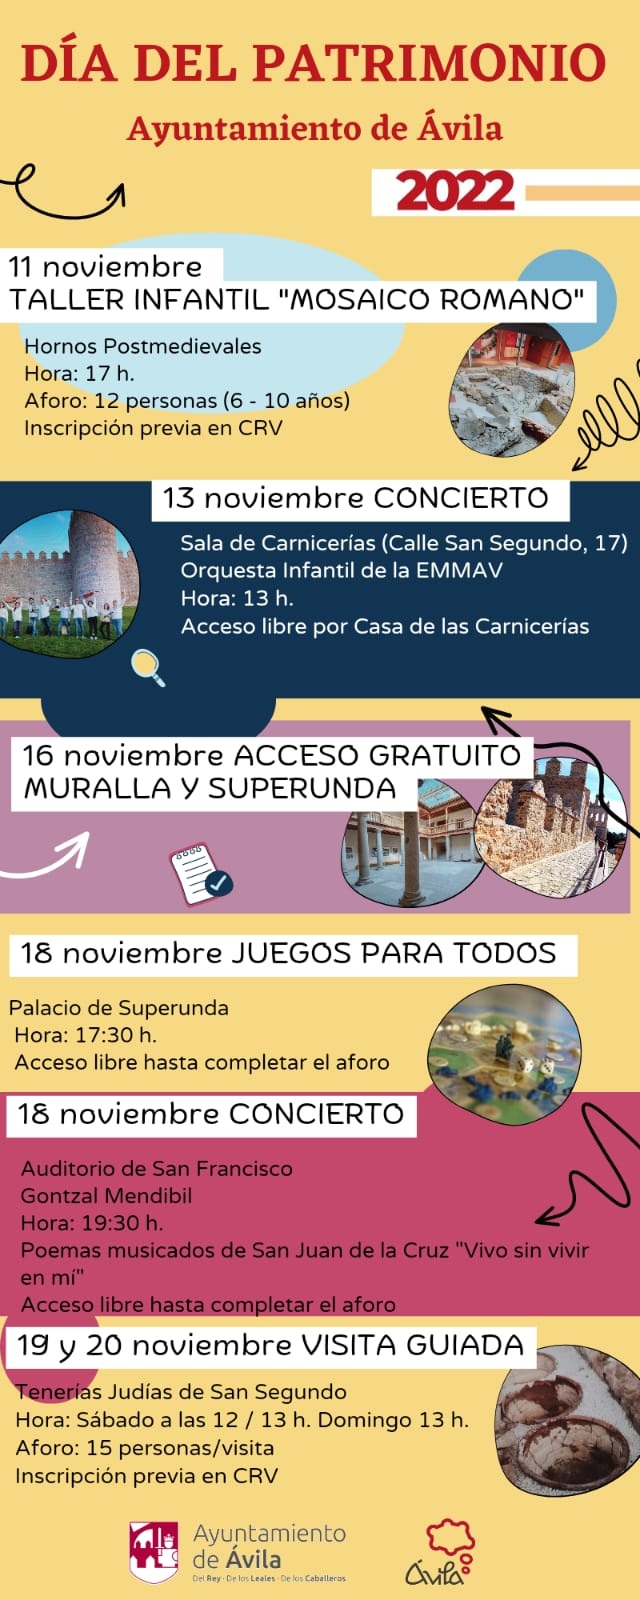 Día del Patrimonio. Entrada gratuita Muralla y Palacio Superunda. Ávila Turismo